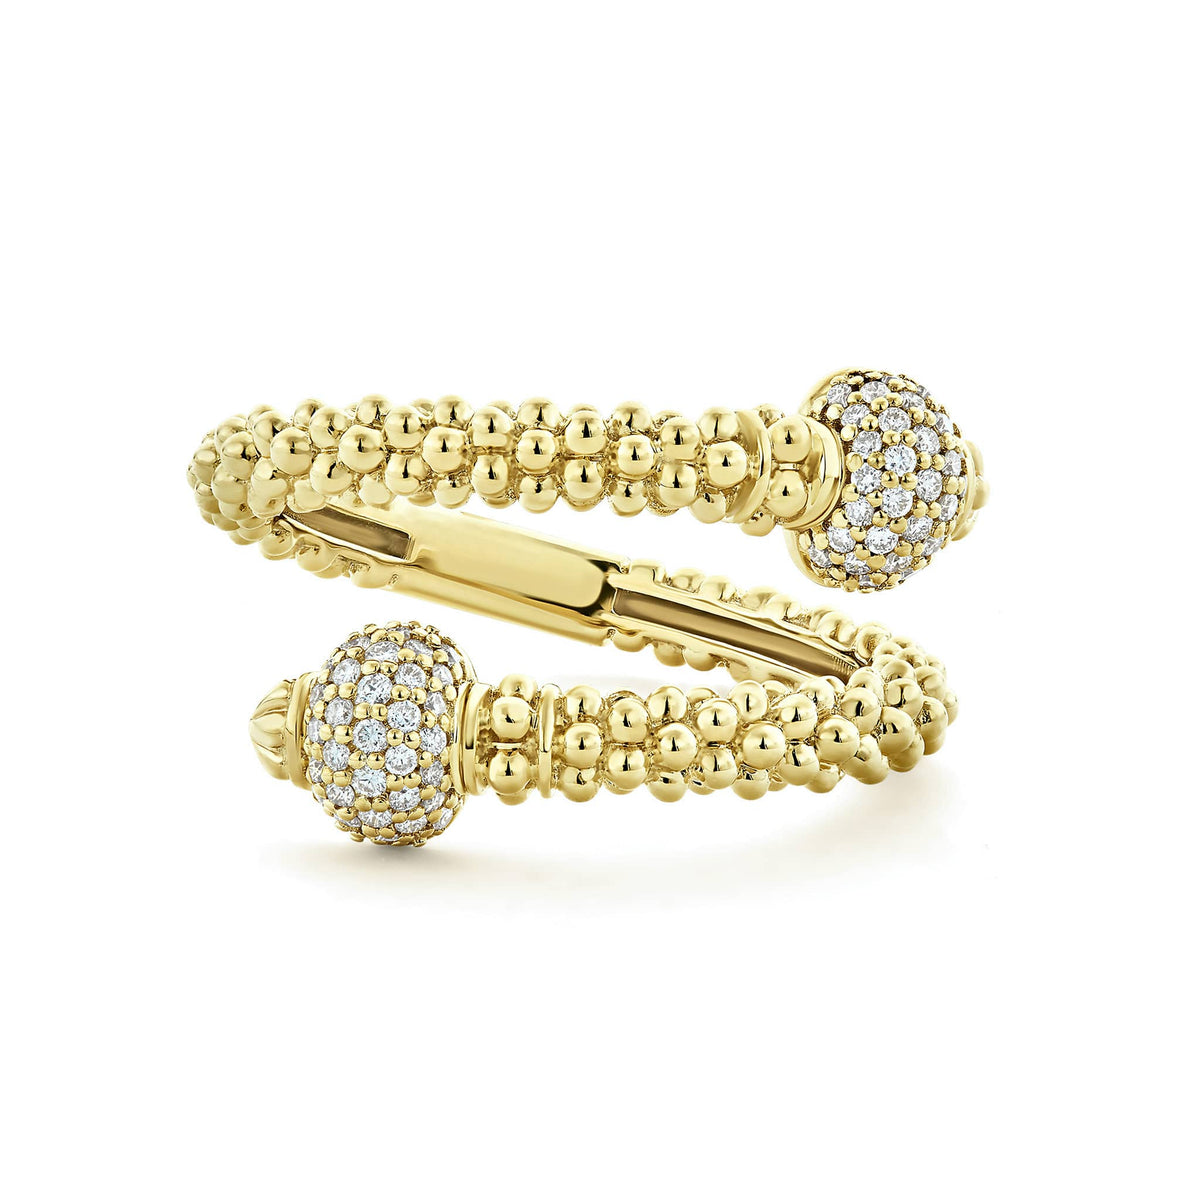 Diamond Wrap Ring | Caviar Gold | LAGOS Jewelry